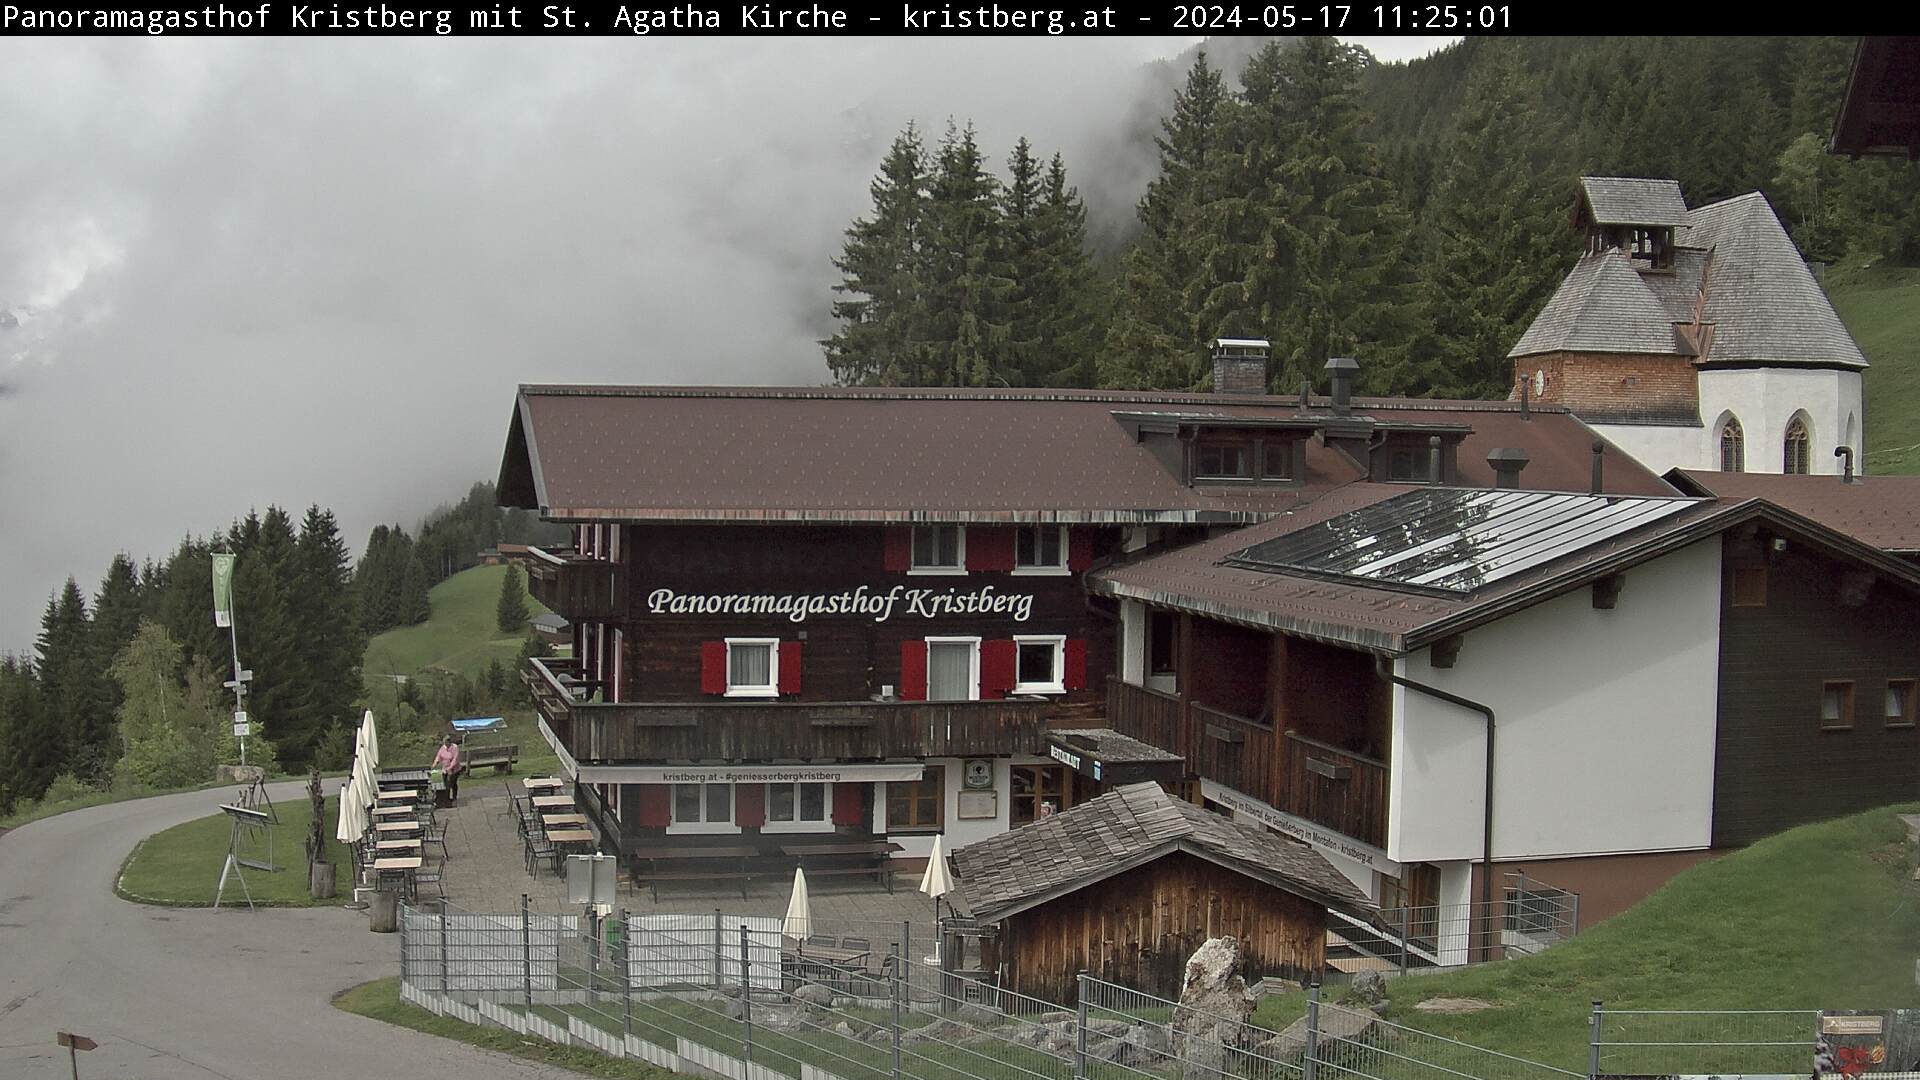 Die Webcam mit diesem Livebild zeigt den Panoramagasthof Kristberg, die St. Agatha Bergknappenkapelle, den Blick auf die Rätikongebirgsgruppe mit der Zimba, sowie die Ganzaläta, Falle und die obere Wiese mit Alpilaköpfle. 